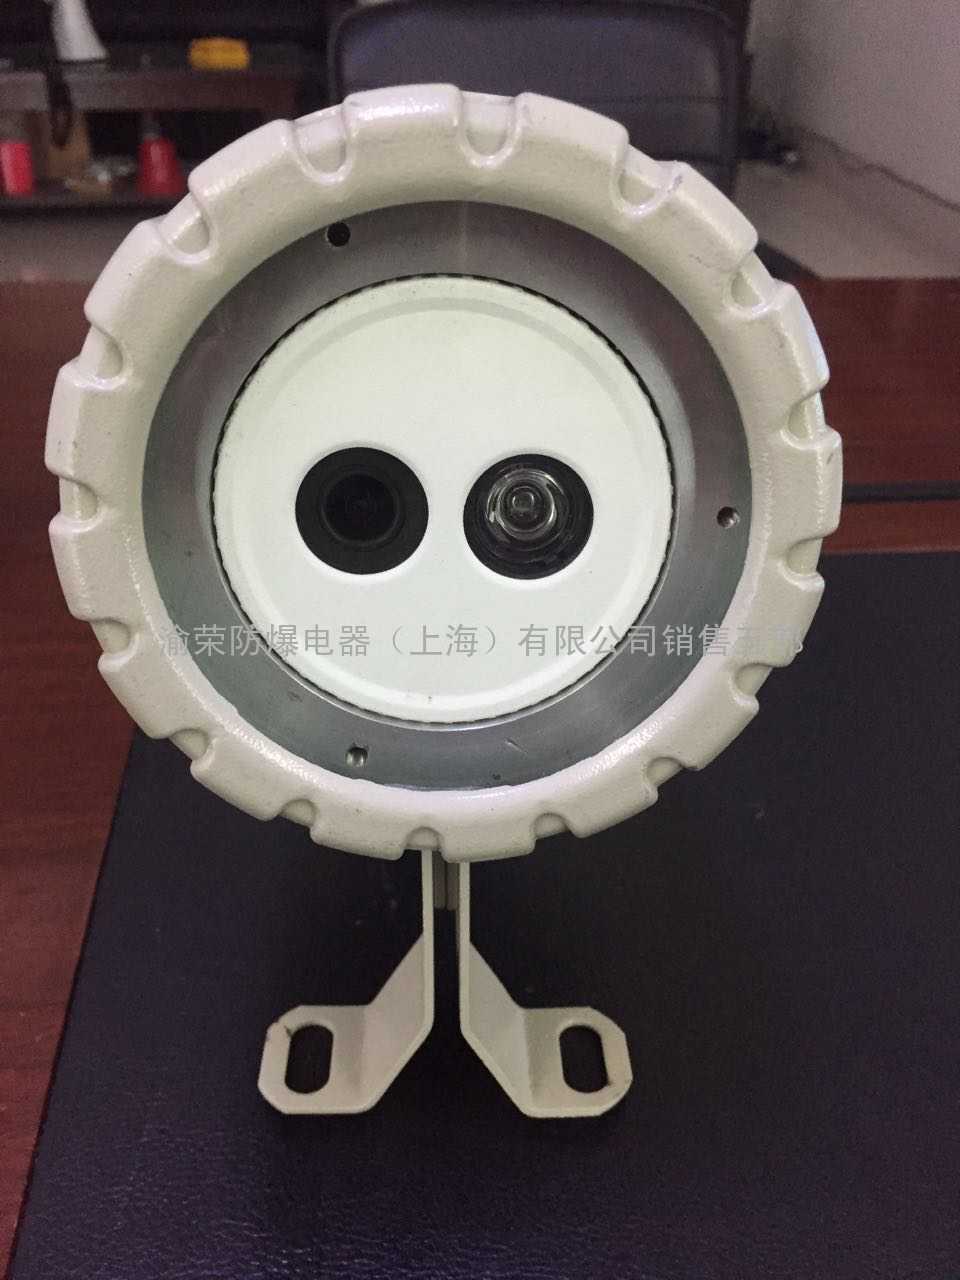 昆山厂家直销YR-600B1防爆红外网络摄像仪